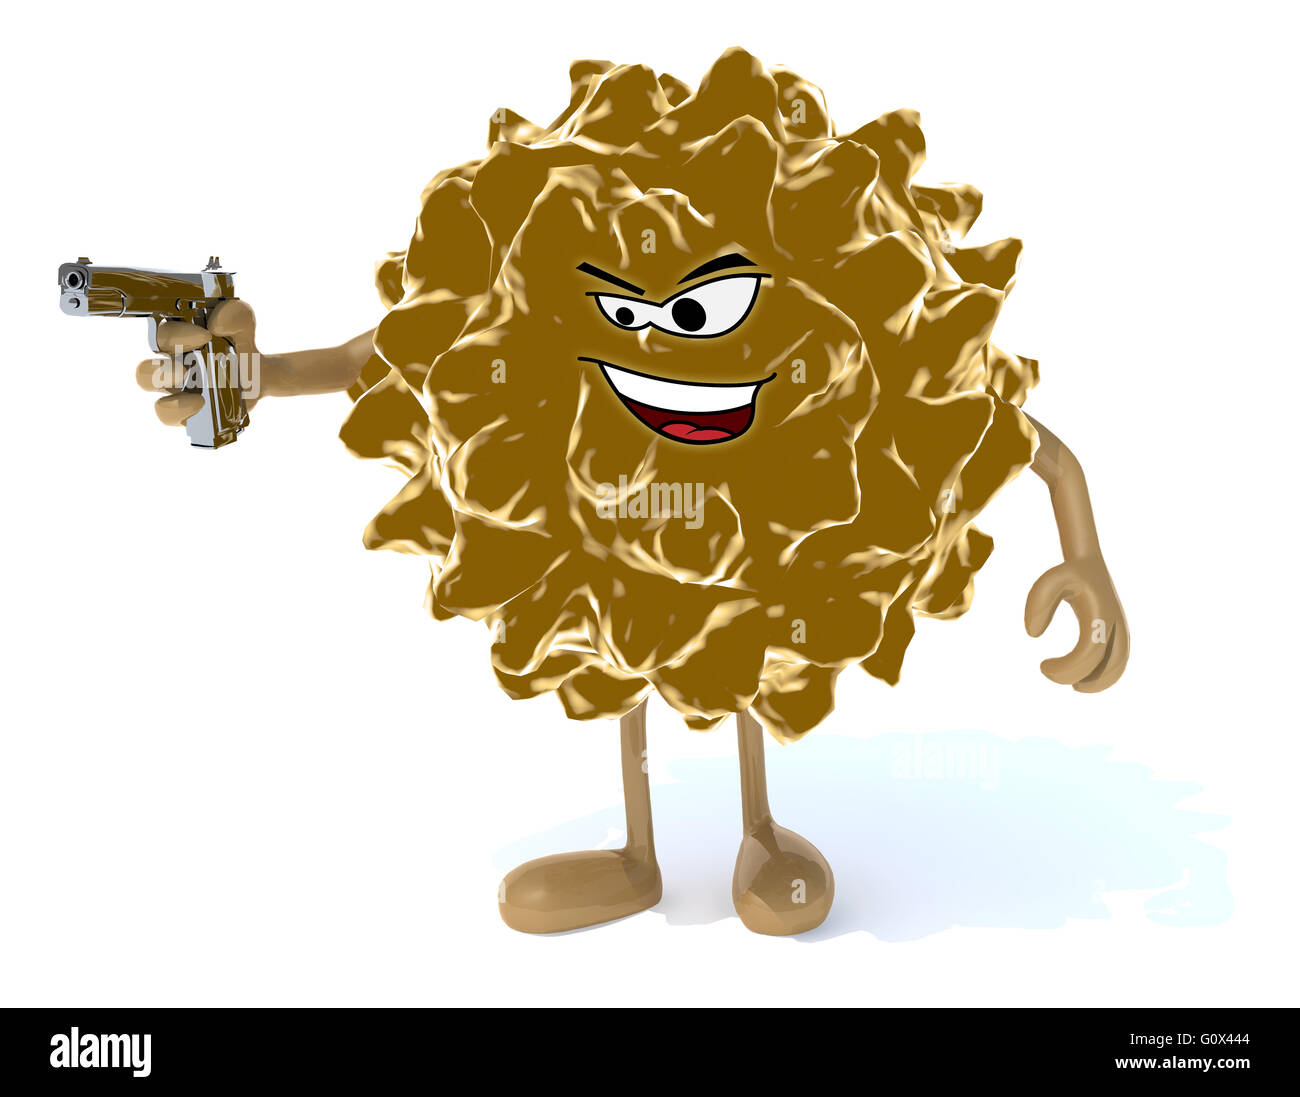 Virus mit Arme, Beine, Gesicht und Waffe auf der hand, 3d illustration Stockfoto